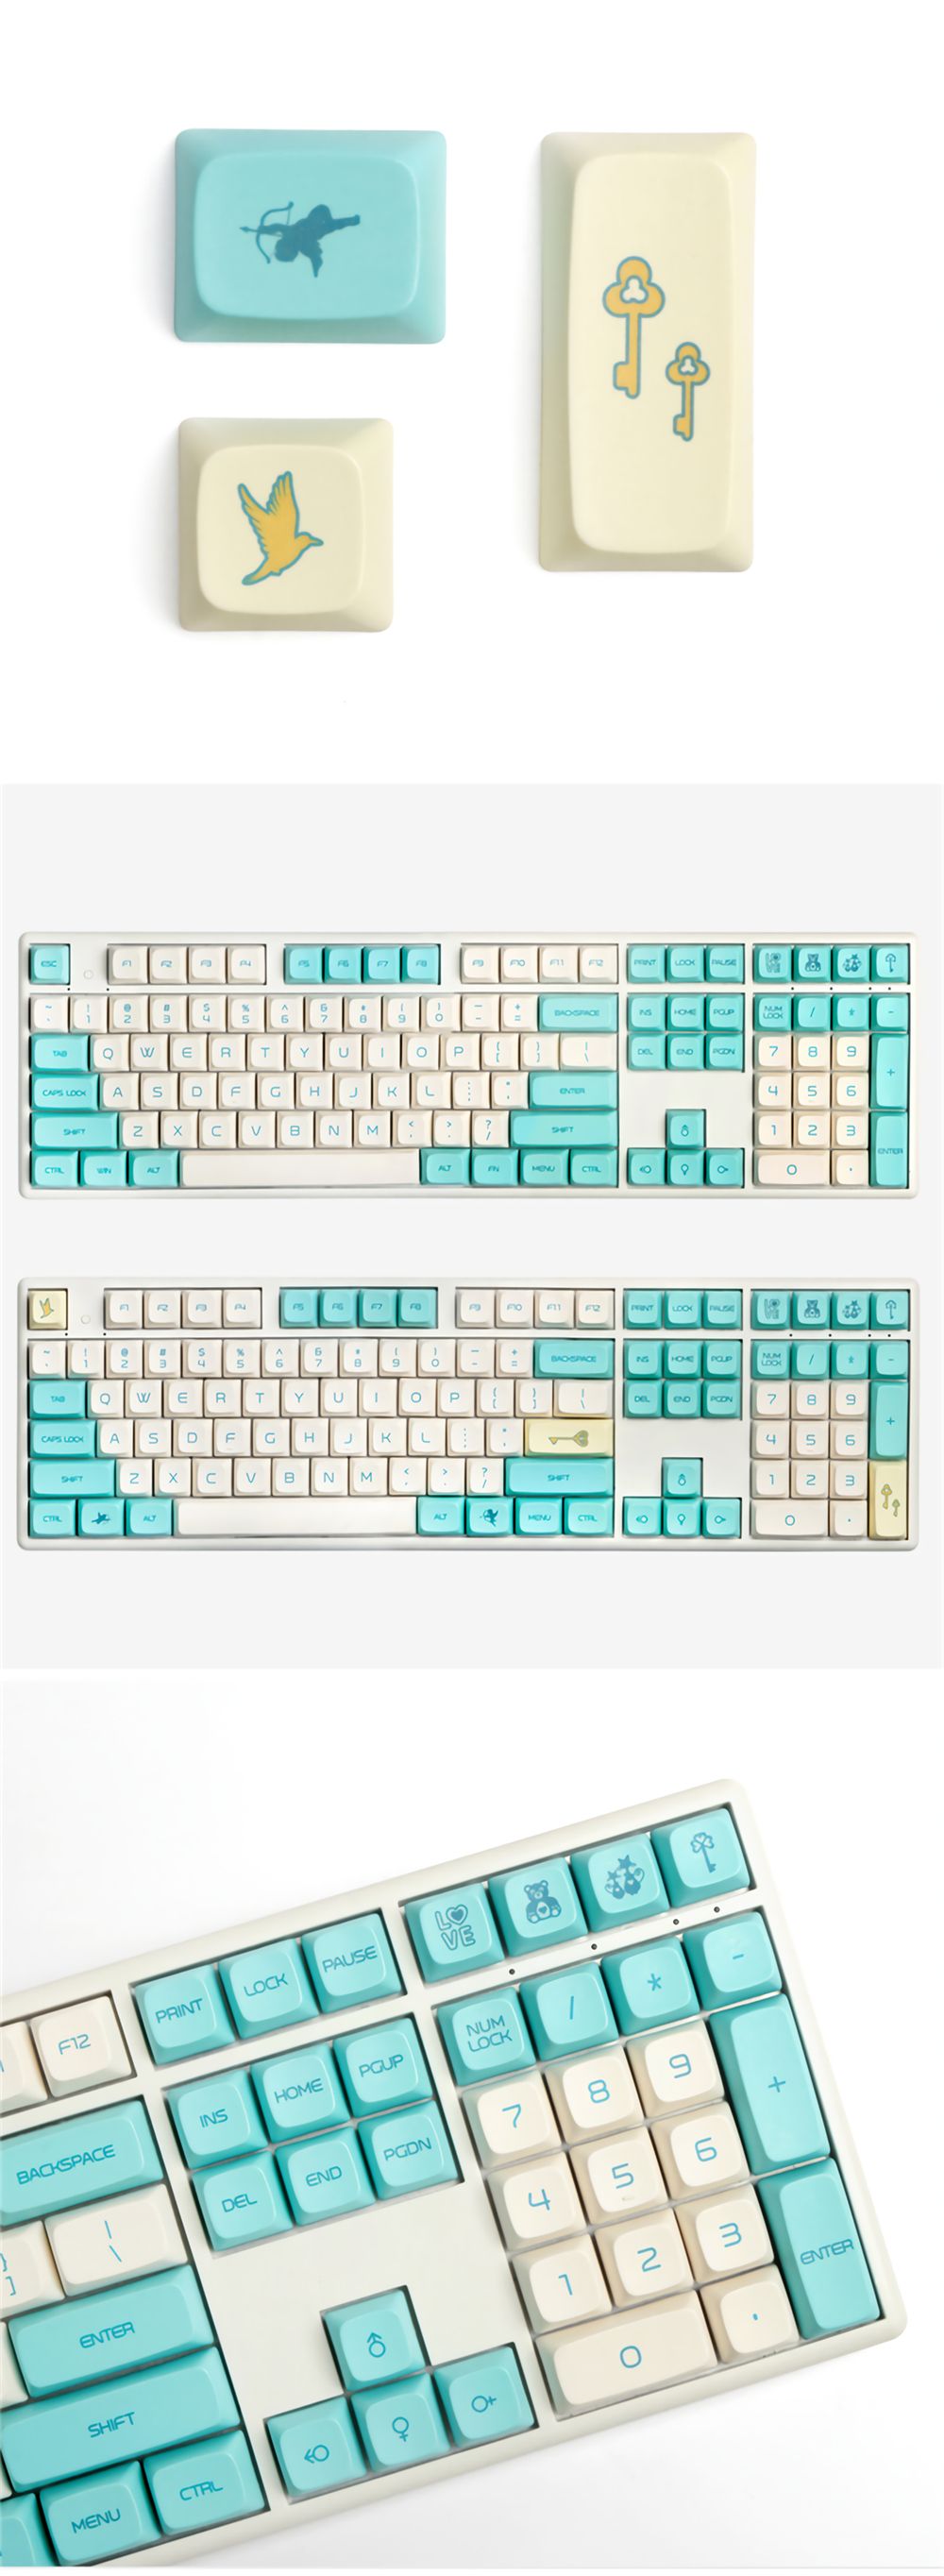 138-Keys-Blue-Robin-Keycap-Set-OEM-Profile-PBT-Sublimation-Keycaps-for-Mechanical-Keyboards-1694585